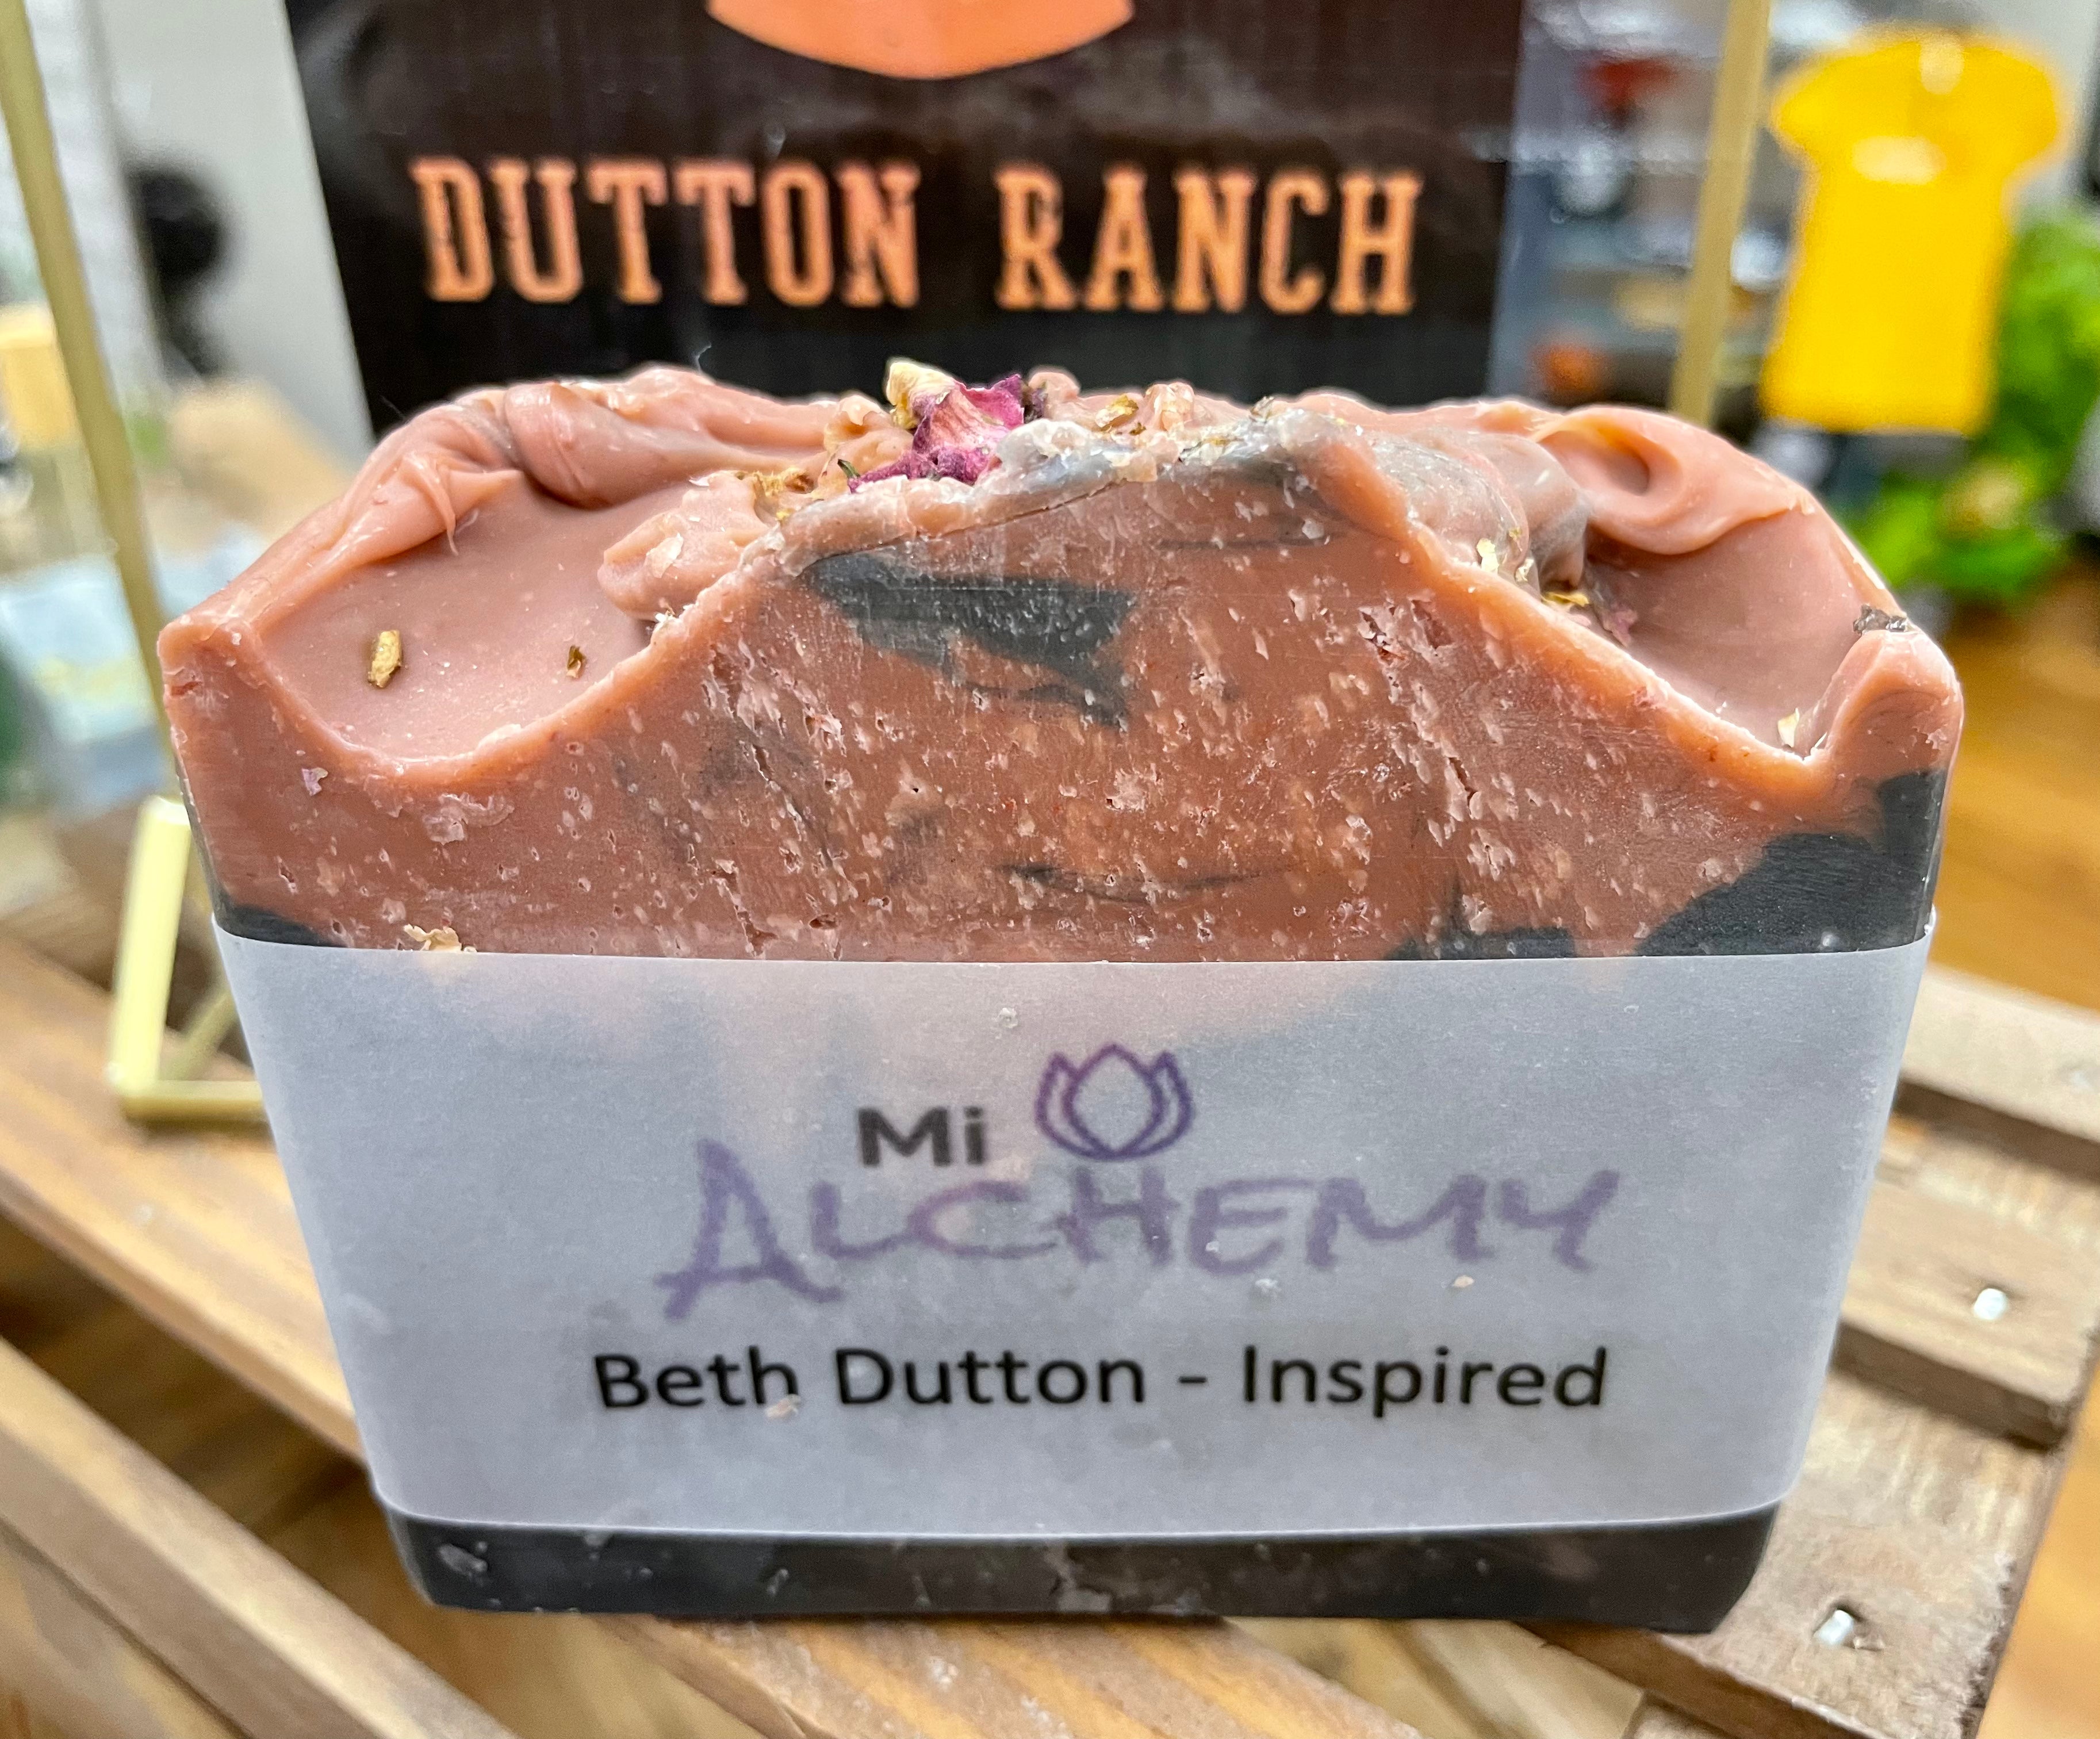 Beth Dutton - Inspired